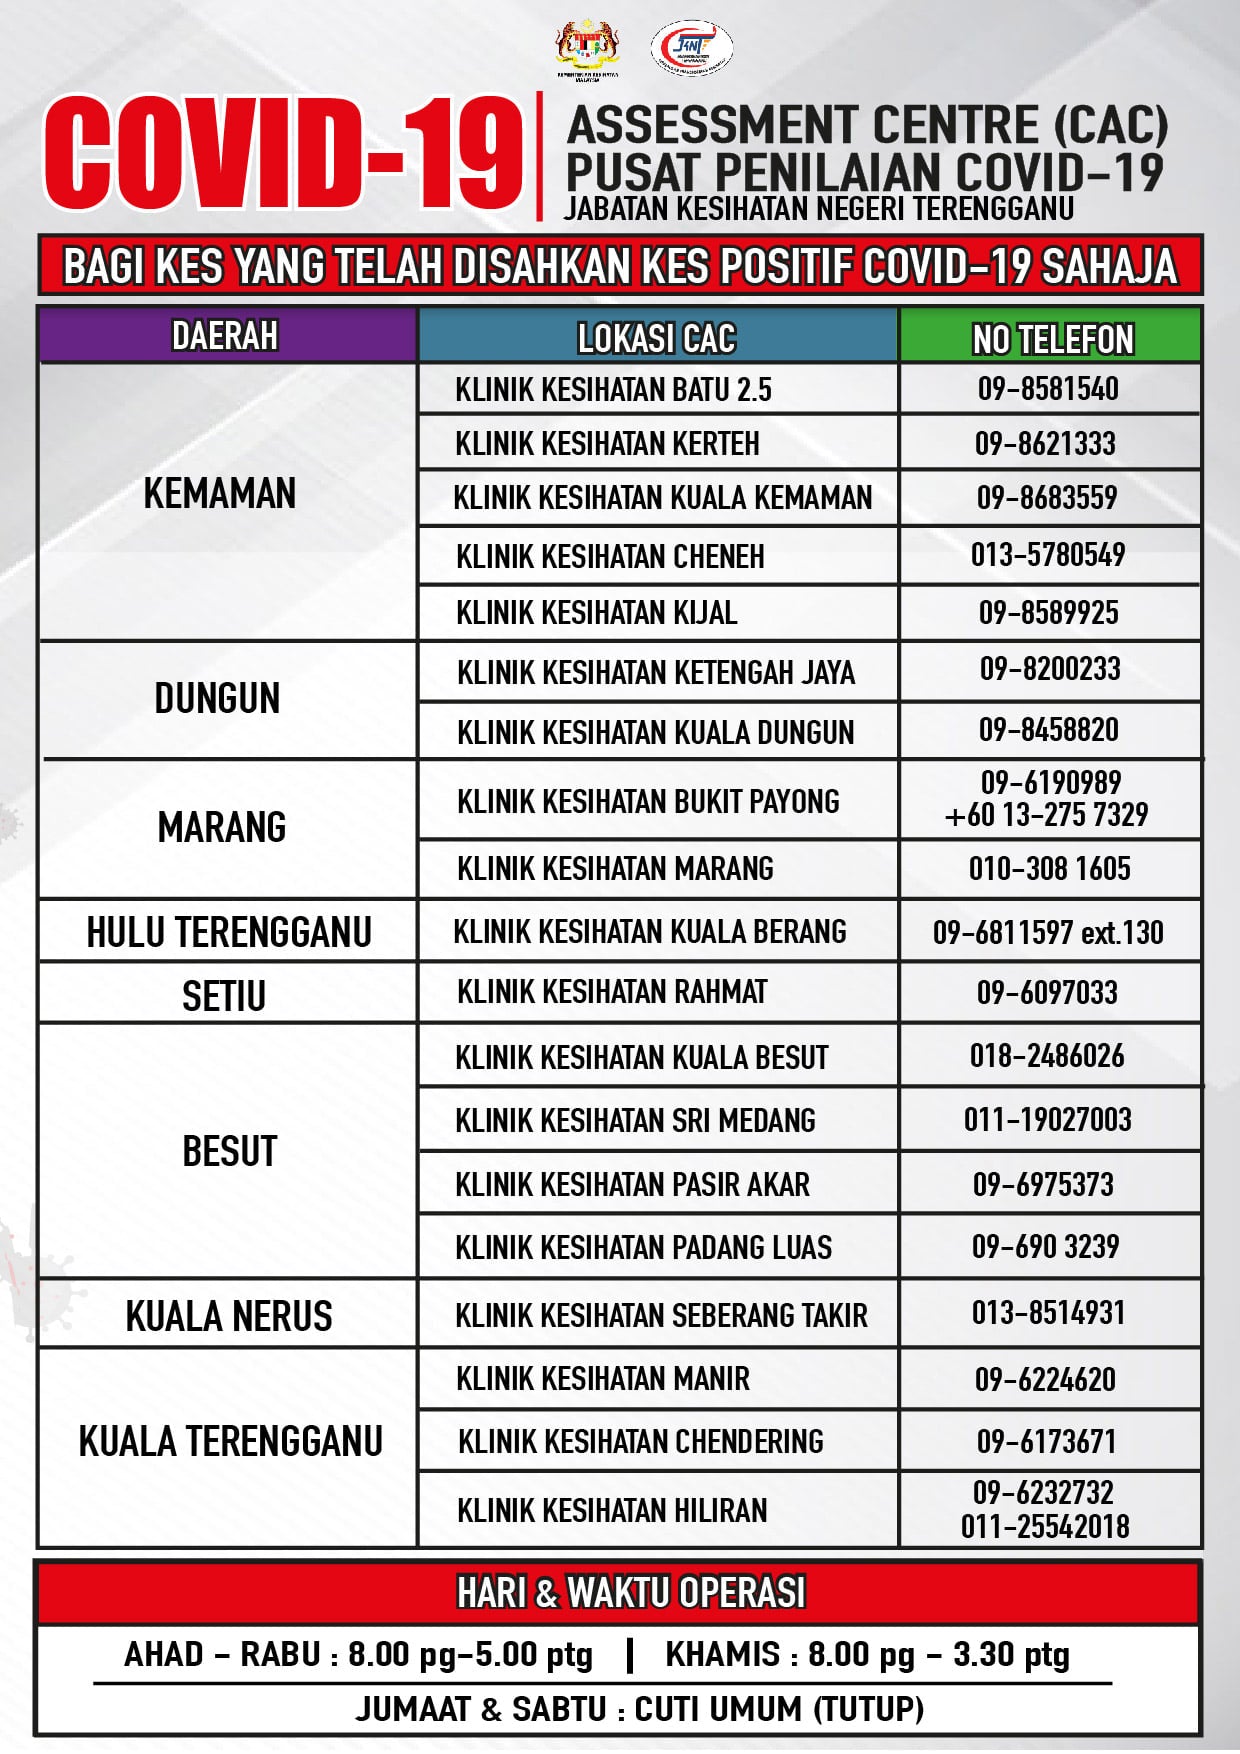 Senarai COVID-19 Assessment Center (CAC) Negeri Terengganu